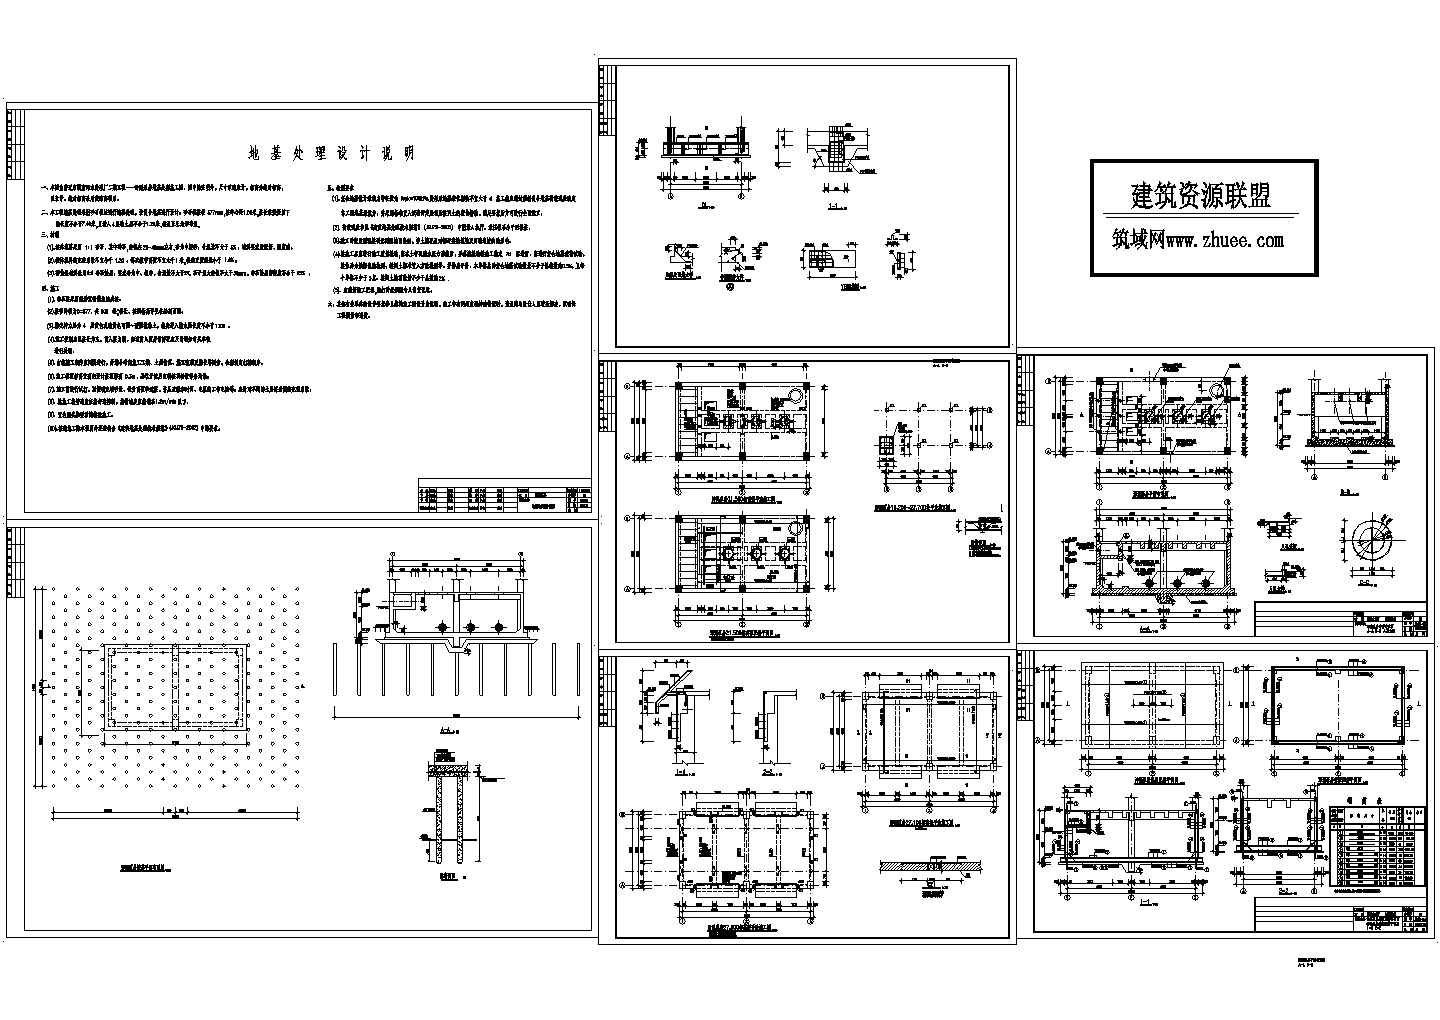 A2O工艺污水处理厂构筑物设计图